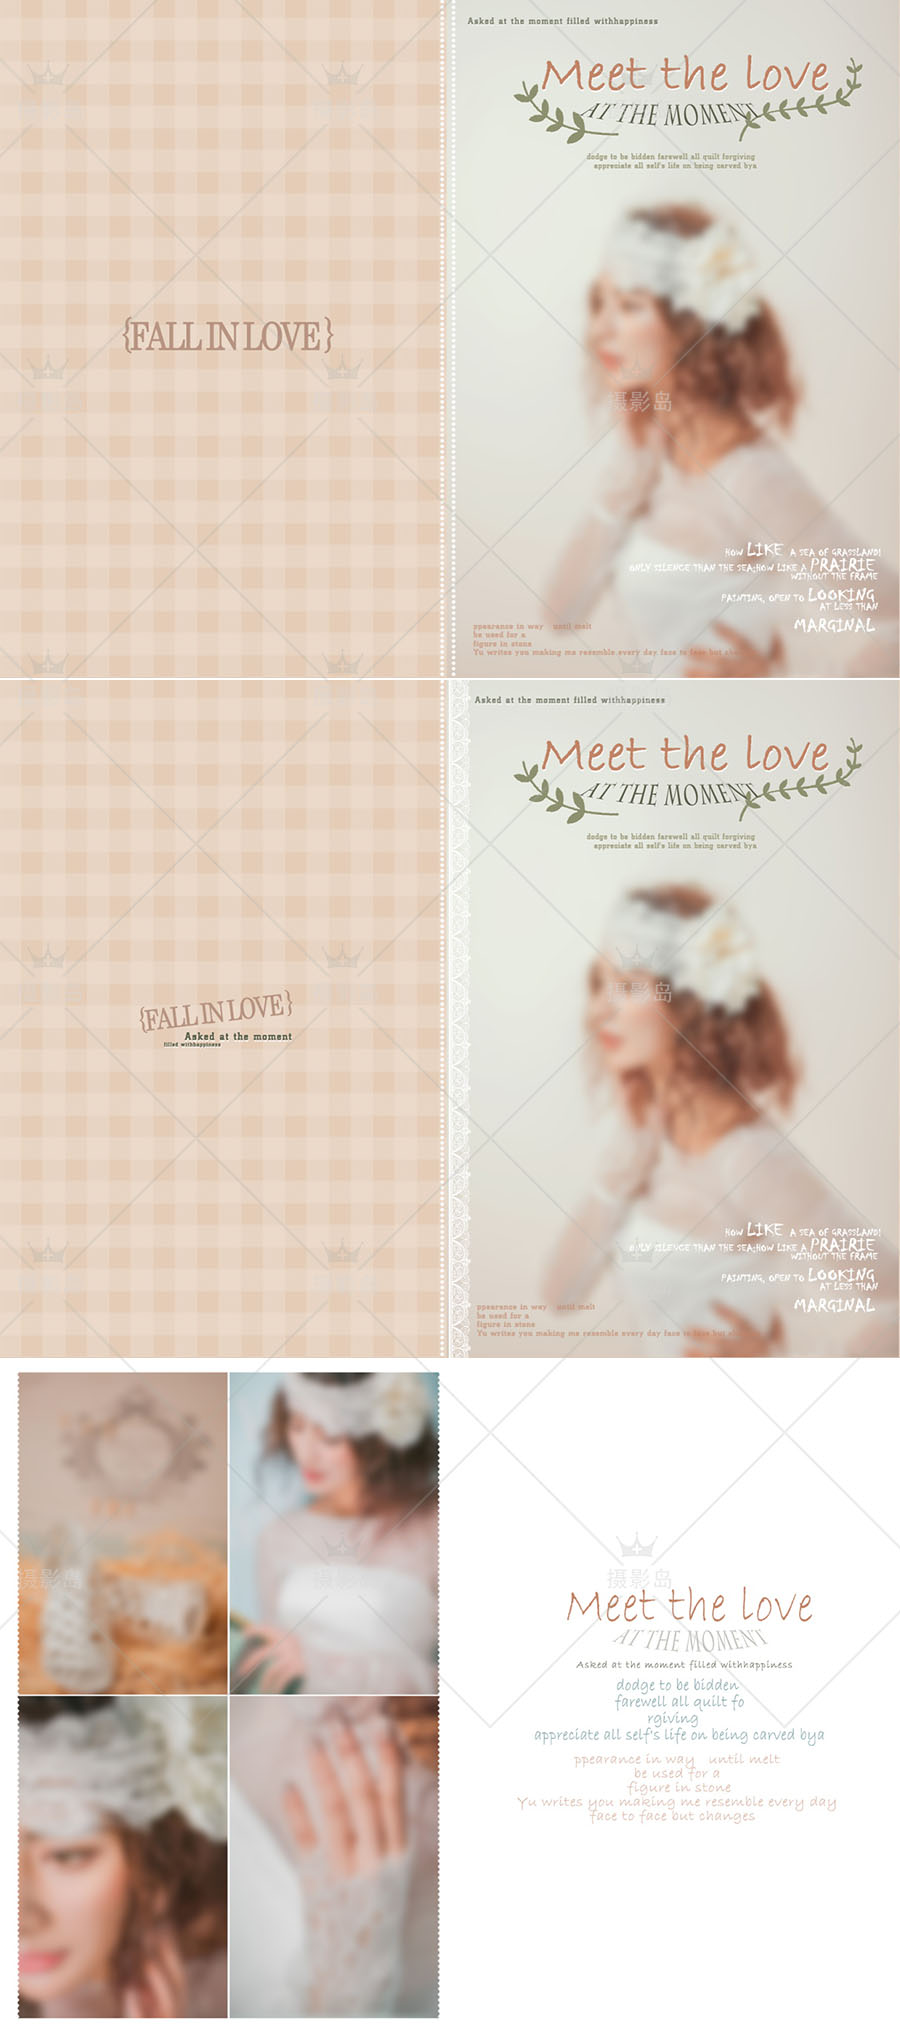 欧式时尚简约婚纱摄影相册PSD模板，内外景写真艺术照排版套版素材